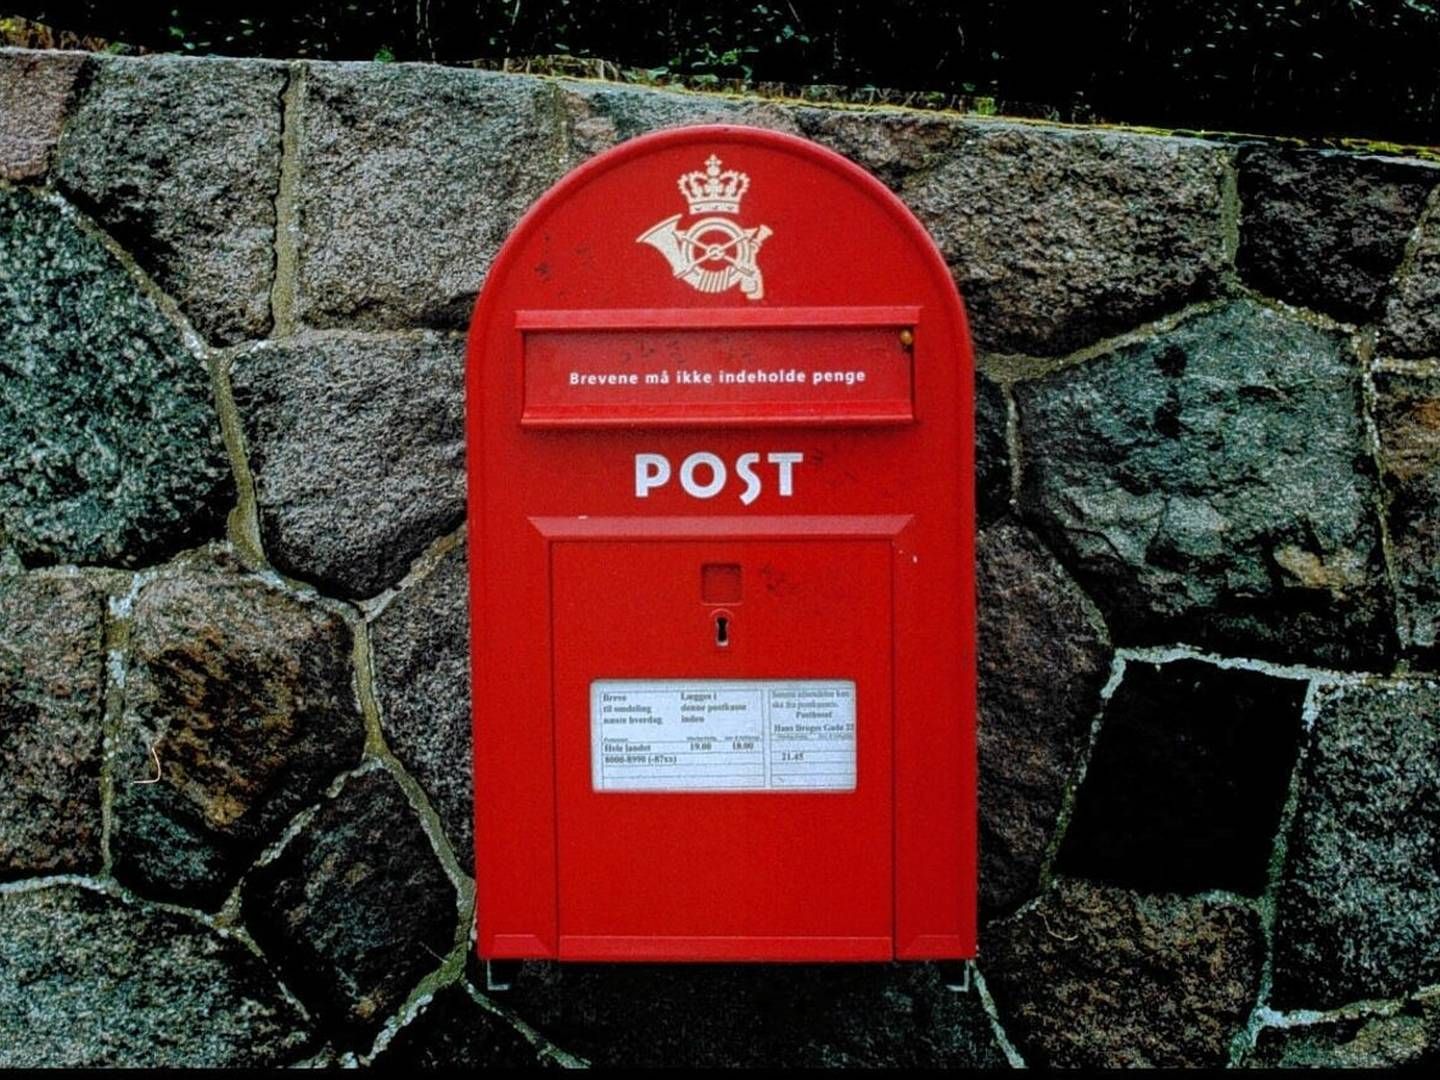 Hvis ikke posten kan leveres alle steder i landet på markedsvilkår, kan statsstøtte igen komme på tale, fremgår det af udkastet til en ny postlov. | Foto: Carsten Ingemann/Jyllands-Posten/Ritzau Scanpix